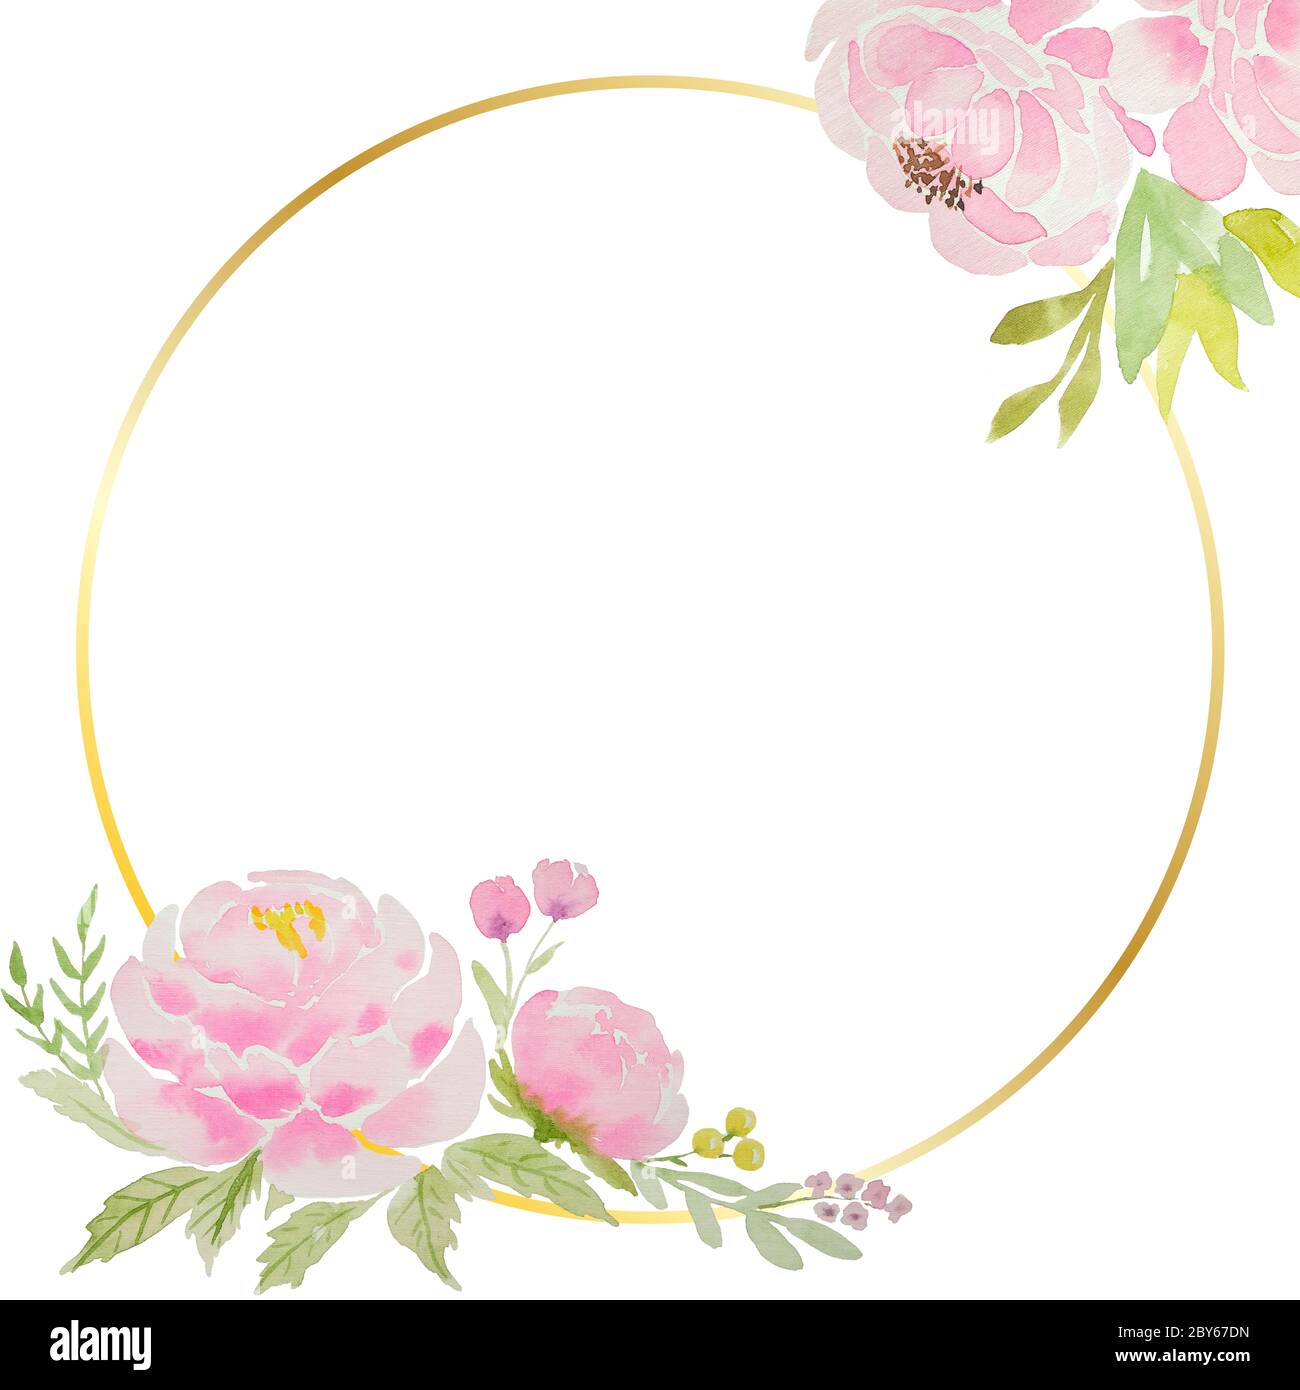 Un beau blanc pour une carte avec des pivoines et des roses roses roses aquarelle négligentes, avec un cadre doré et un fond blanc. Pour un mariage, un anniversaire. Suppr Banque D'Images